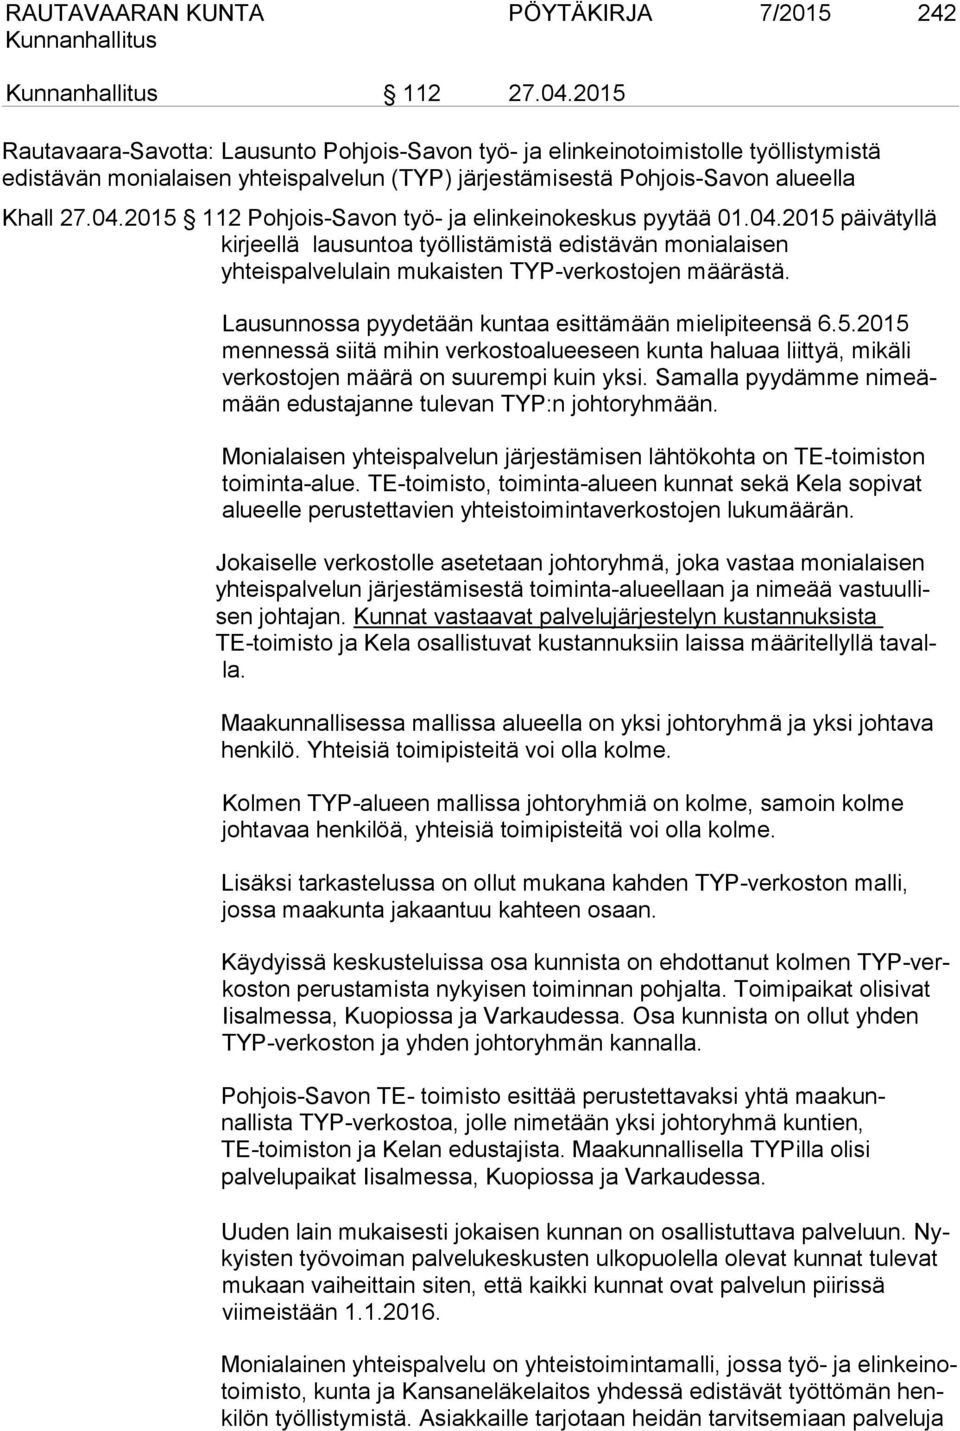 2015 112 Pohjois-Savon työ- ja elinkeinokeskus pyytää 01.04.2015 päivätyllä kirjeellä lausuntoa työllistämistä edistävän monialaisen yhteispalvelulain mukaisten TYP-verkostojen määrästä.